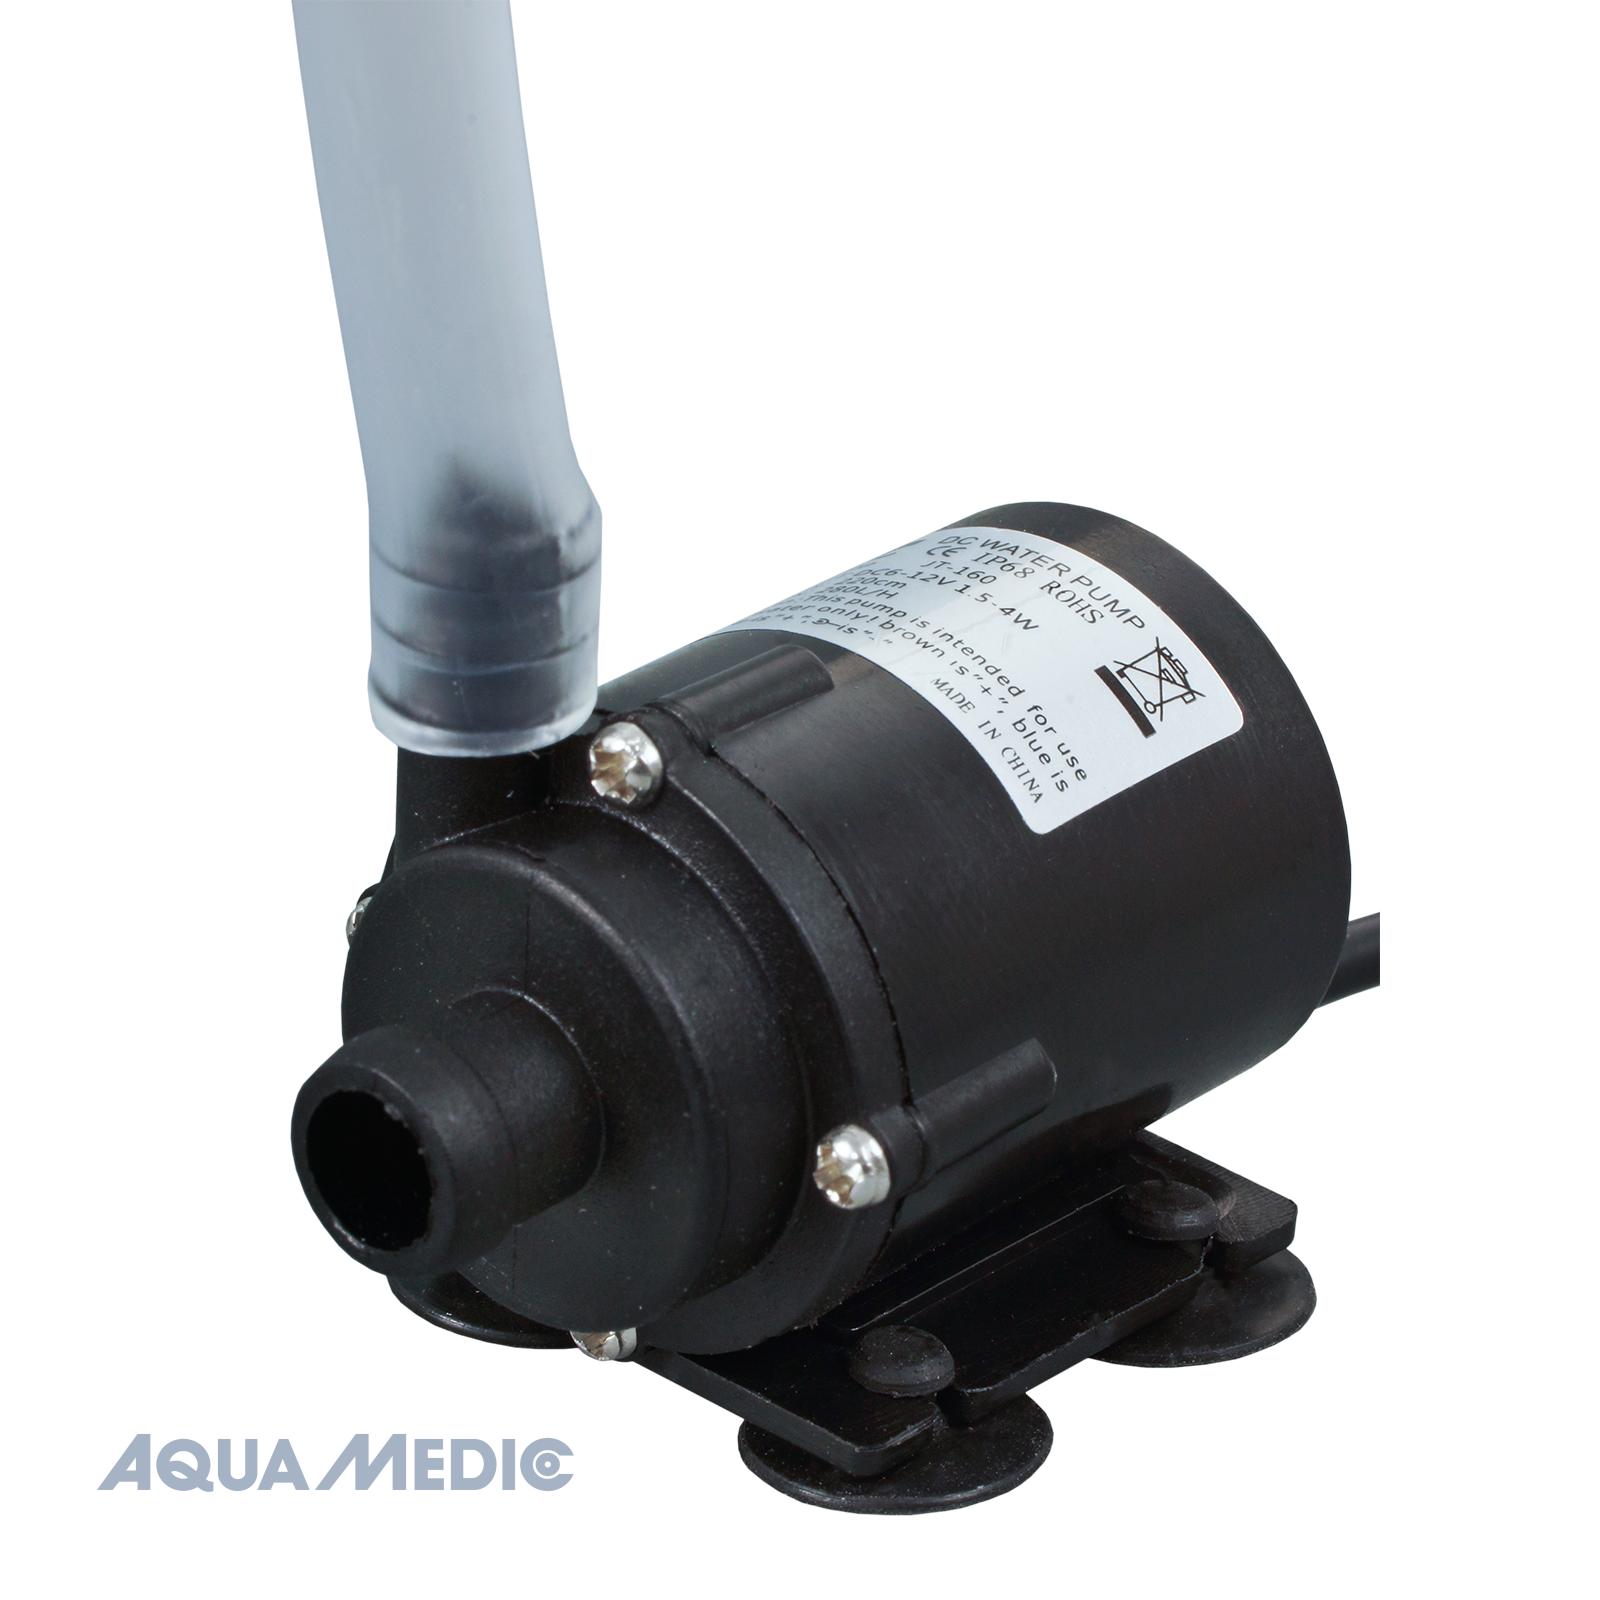 Aqua Medic refill system easy